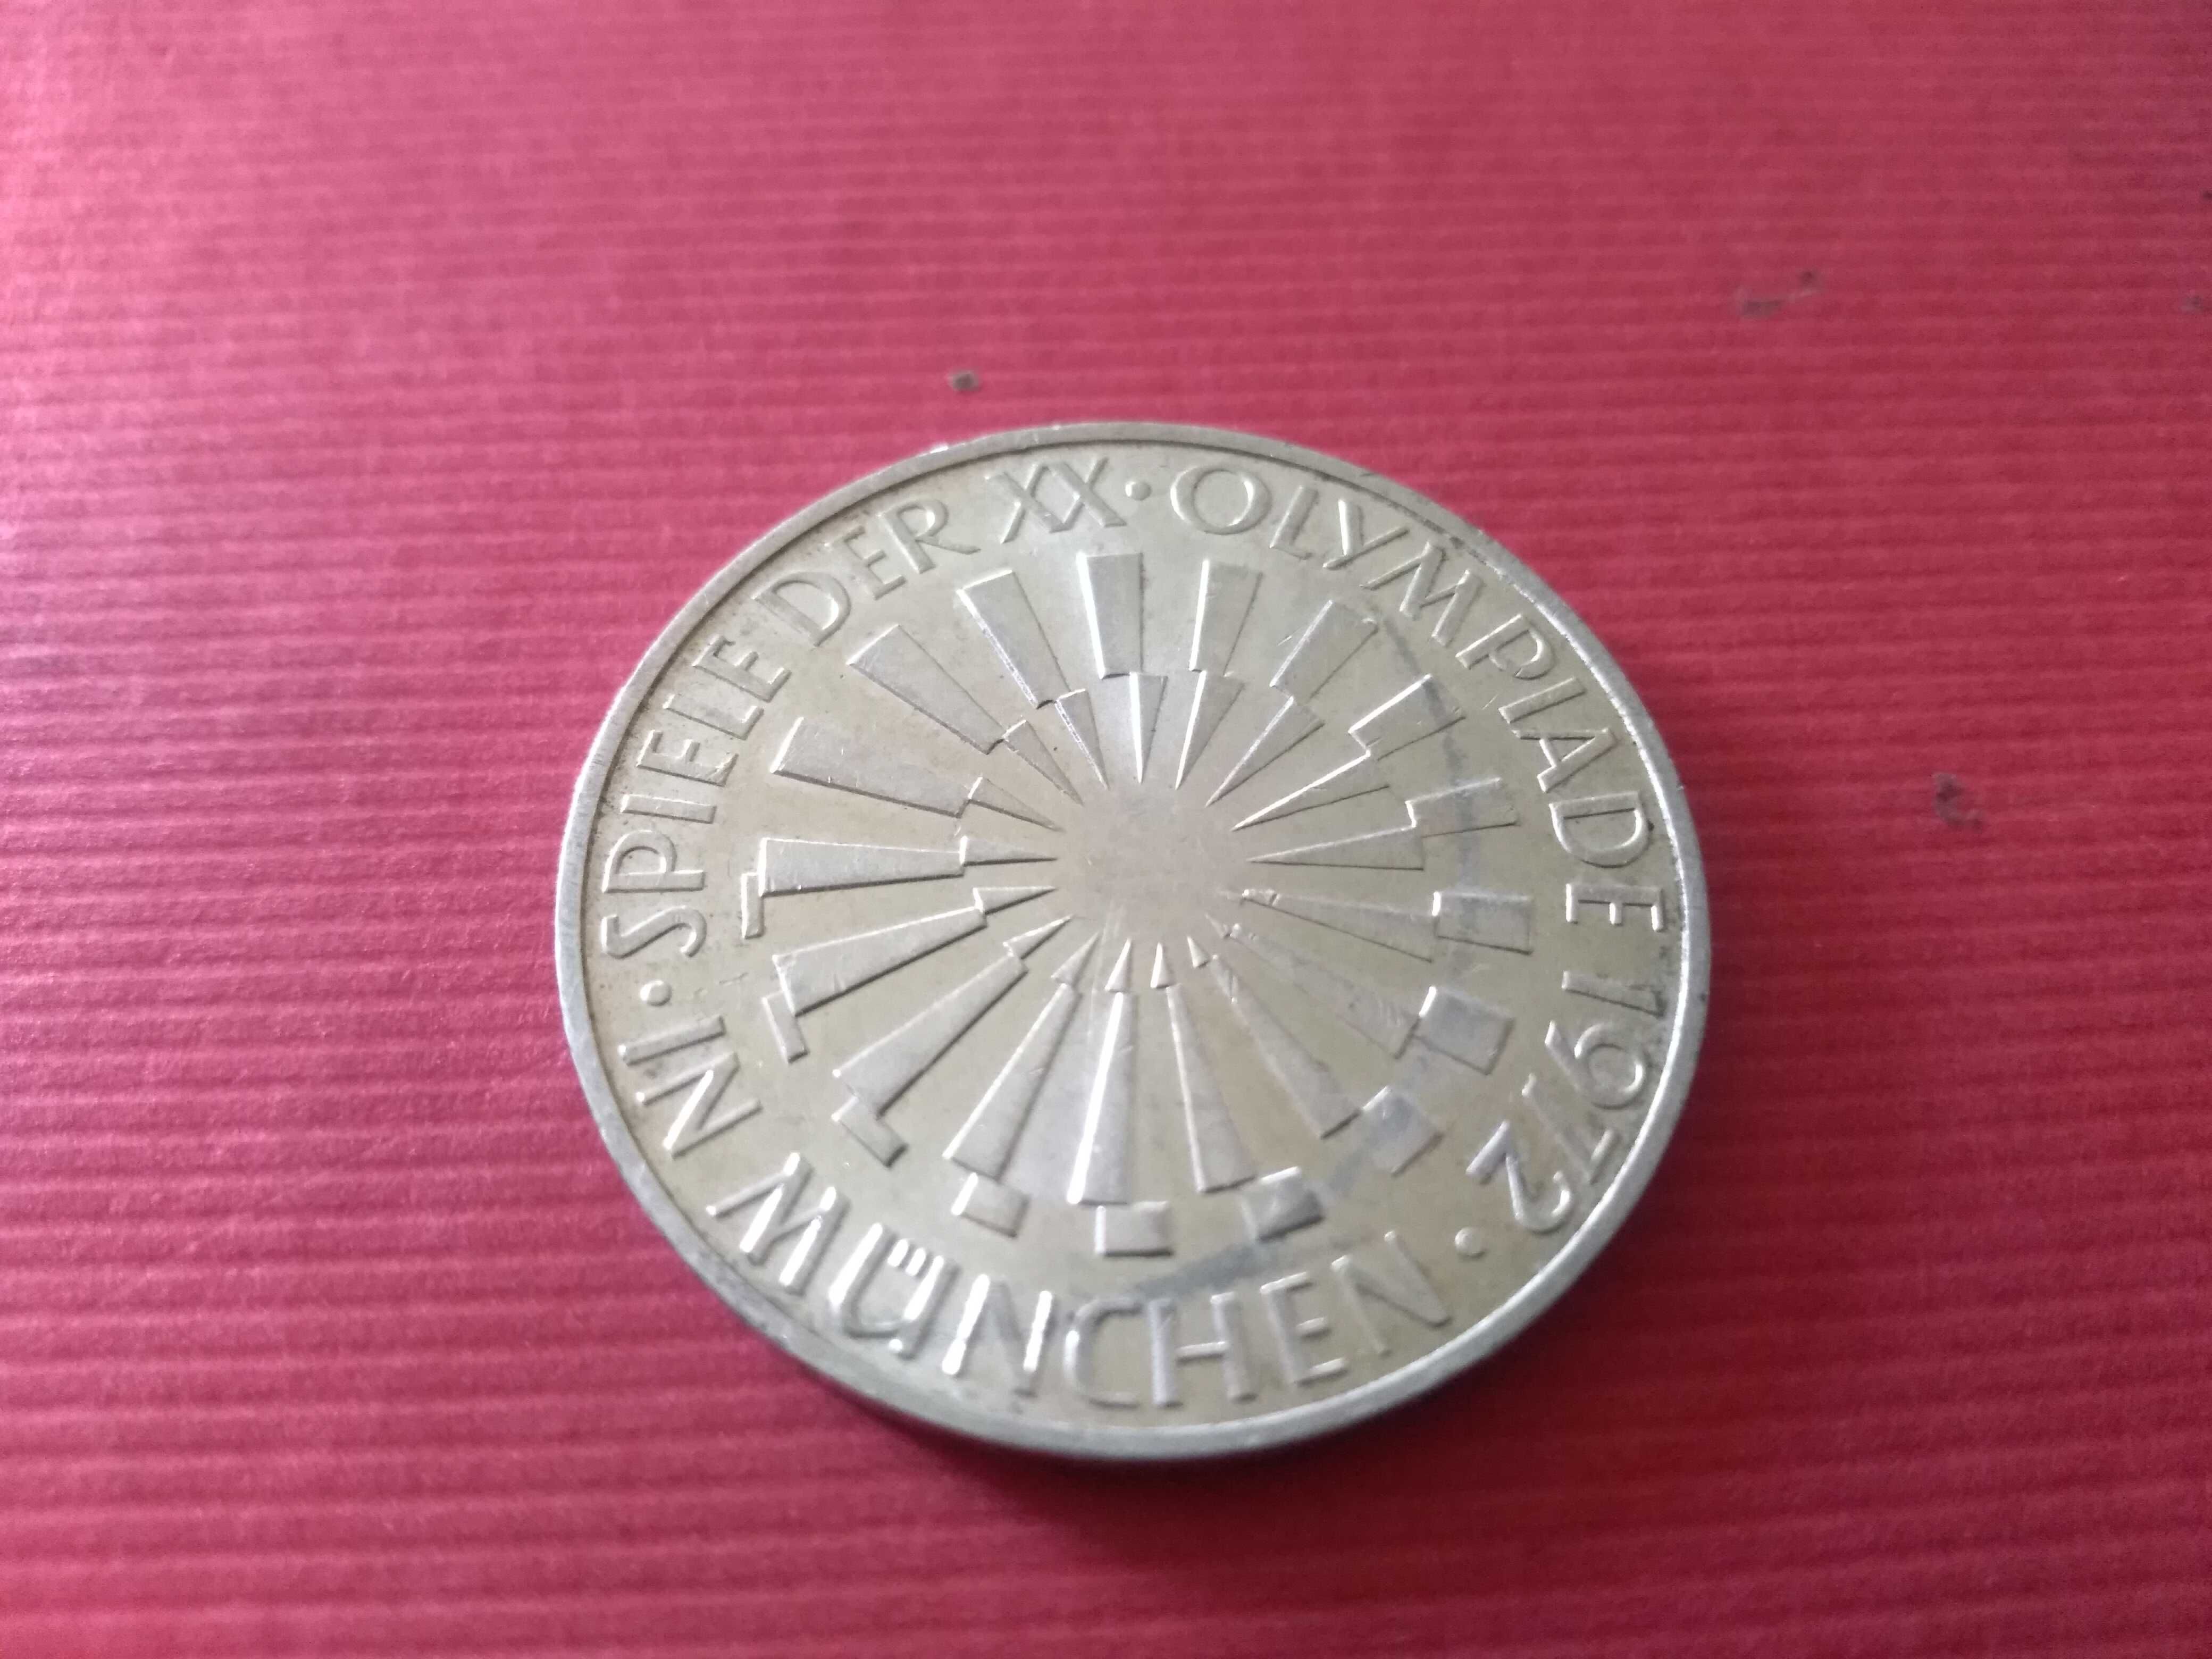 Srebrna moneta - Igrzyska XX Olimpiady w Monachium